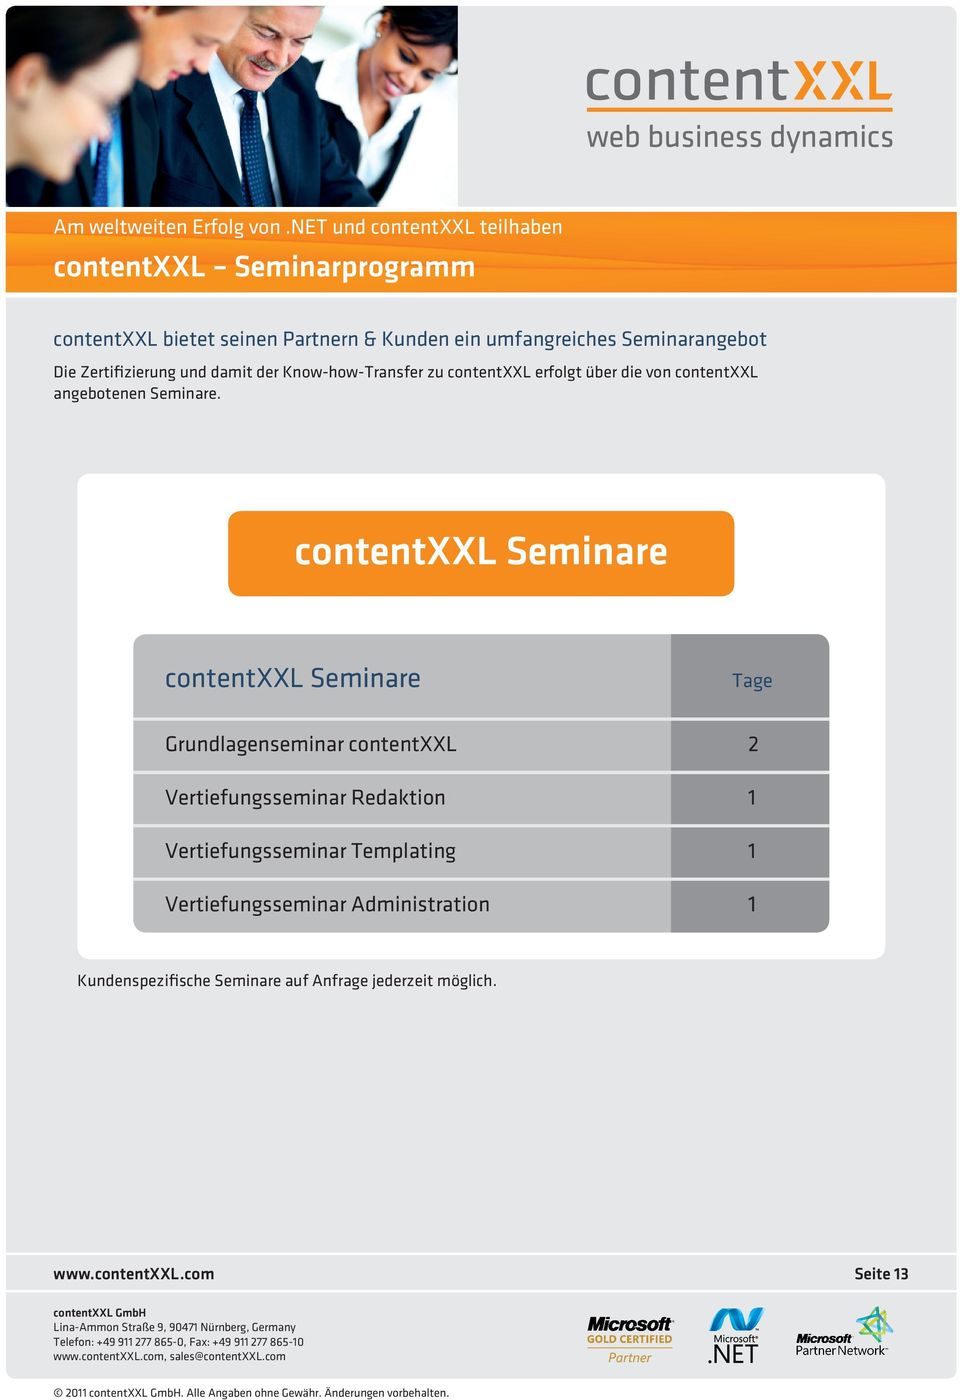 Seminarangebot Die Zertifizierung und damit der Know-how-Transfer zu contentxxl erfolgt über die von contentxxl angebotenen Seminare.